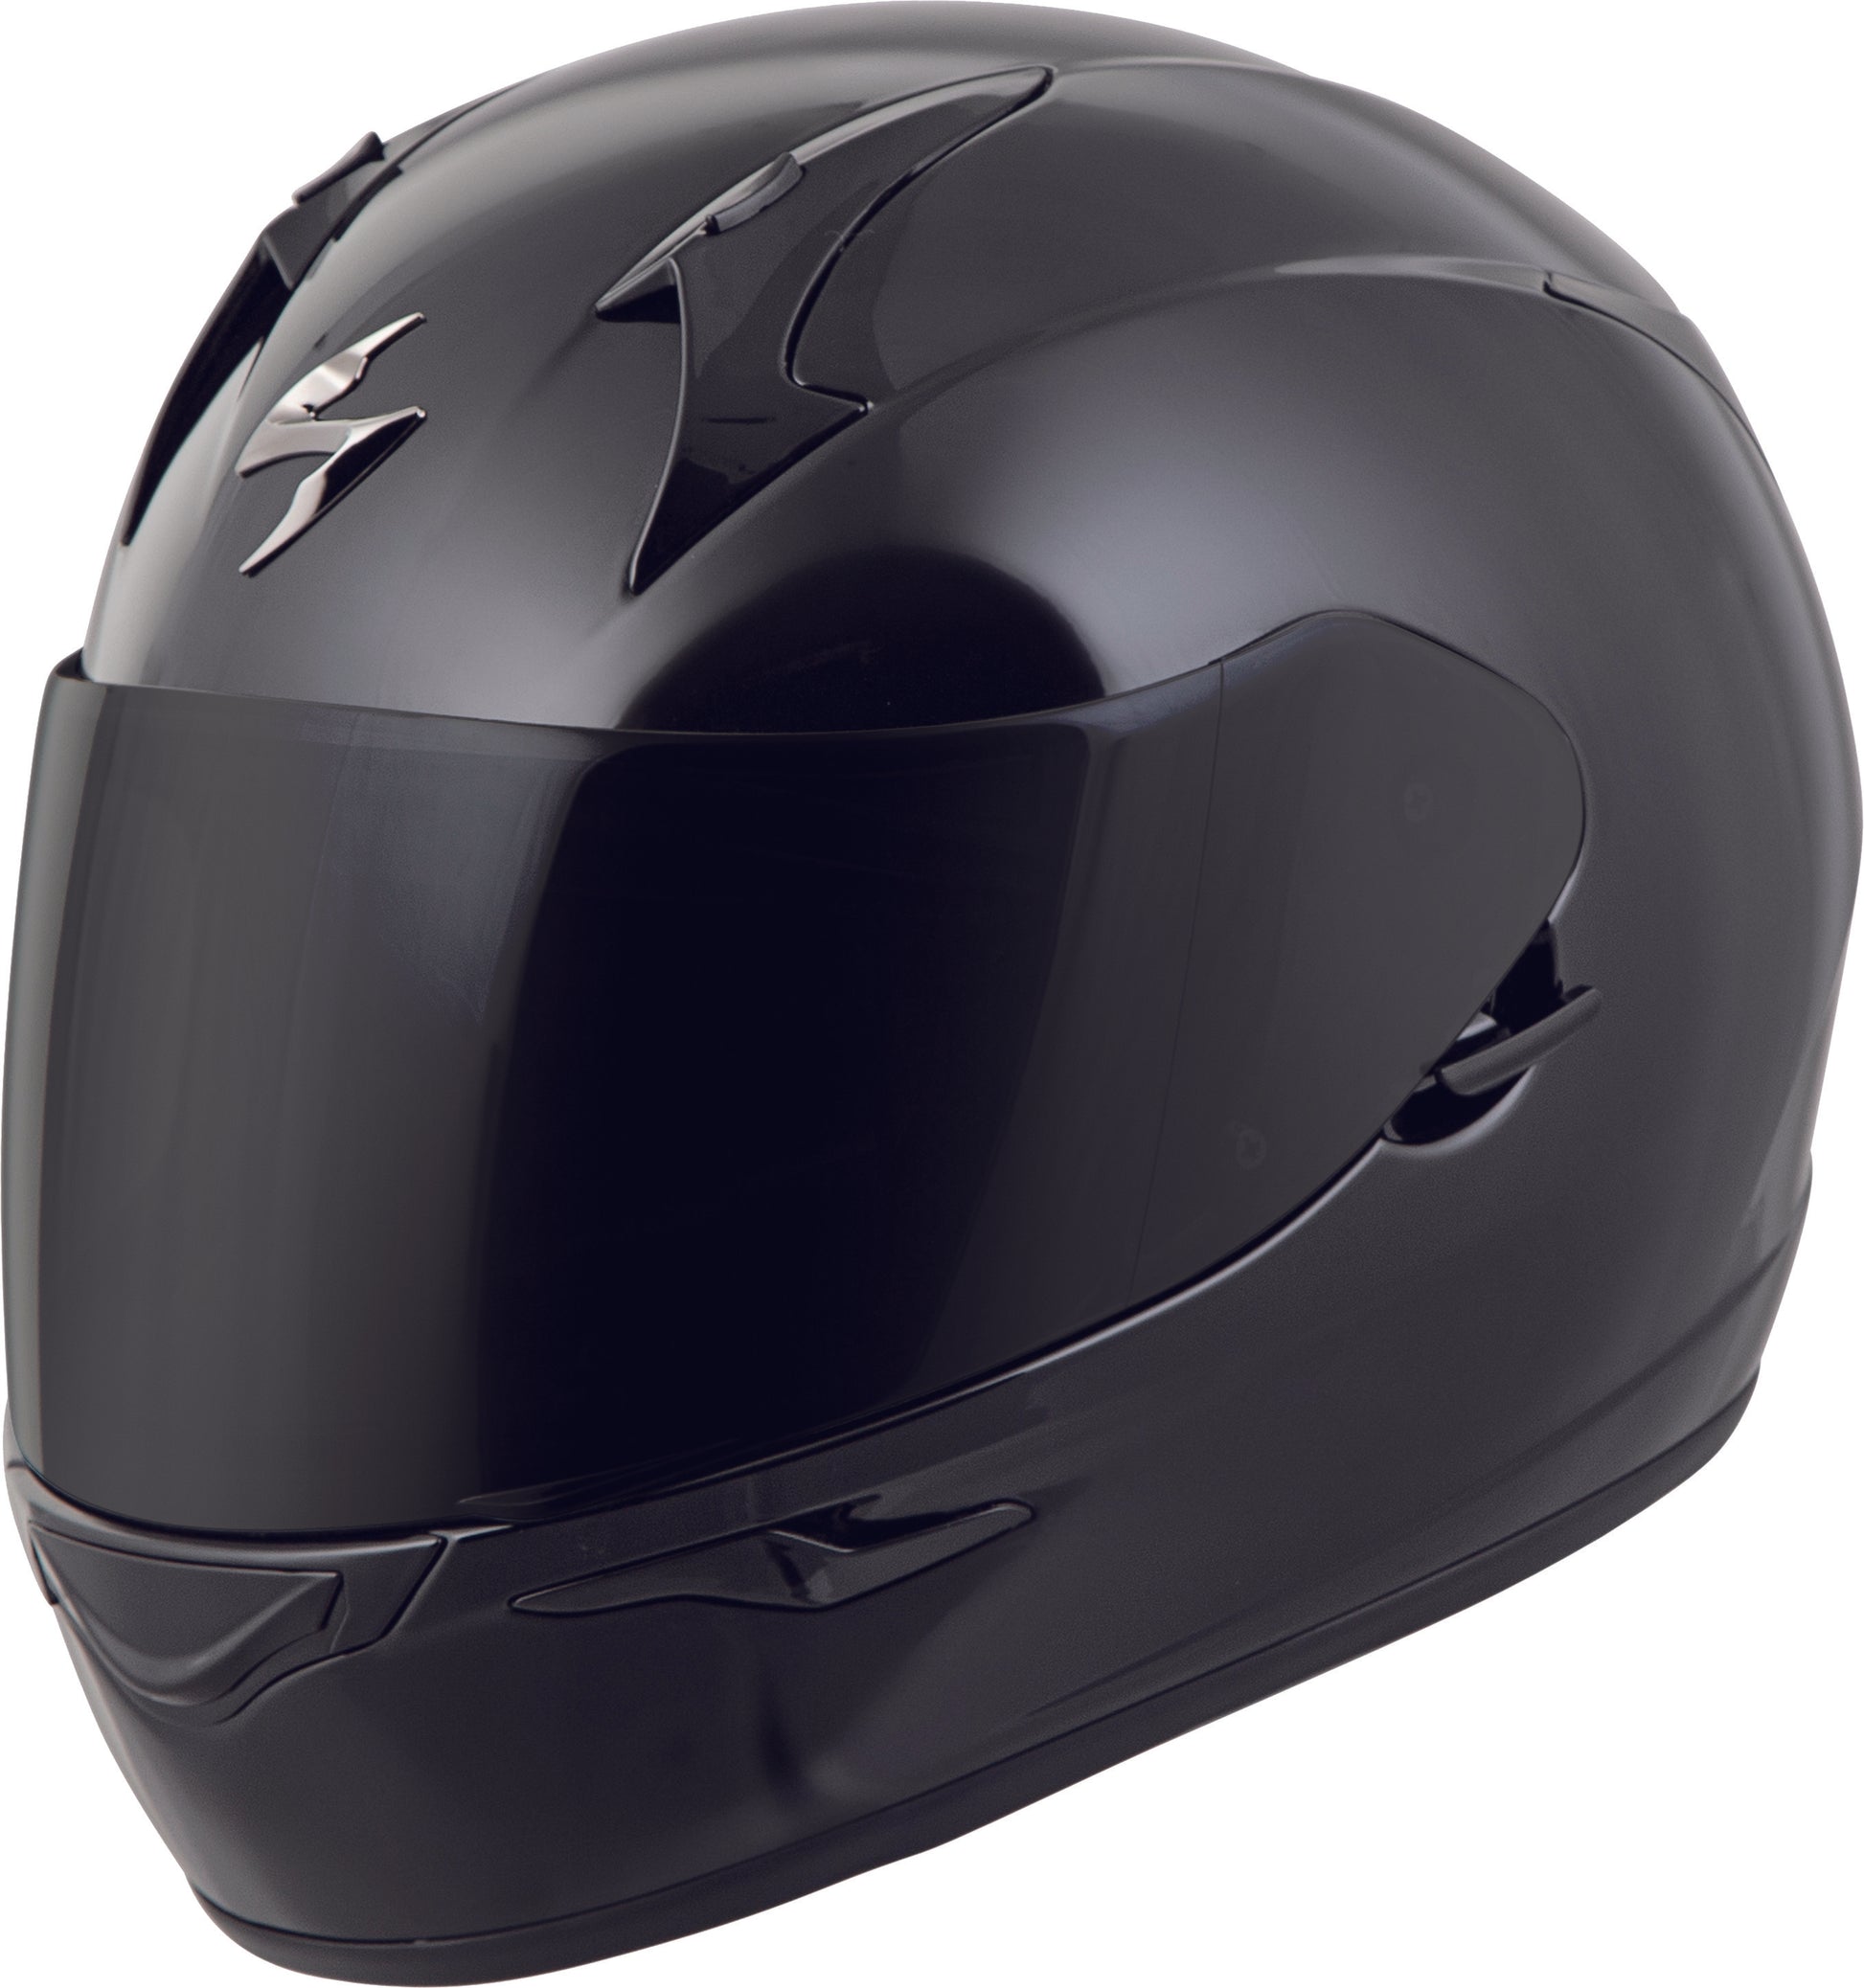 Scorpion Exo 75-1140 EXO-R320 Full-Face Helmet Gloss Black